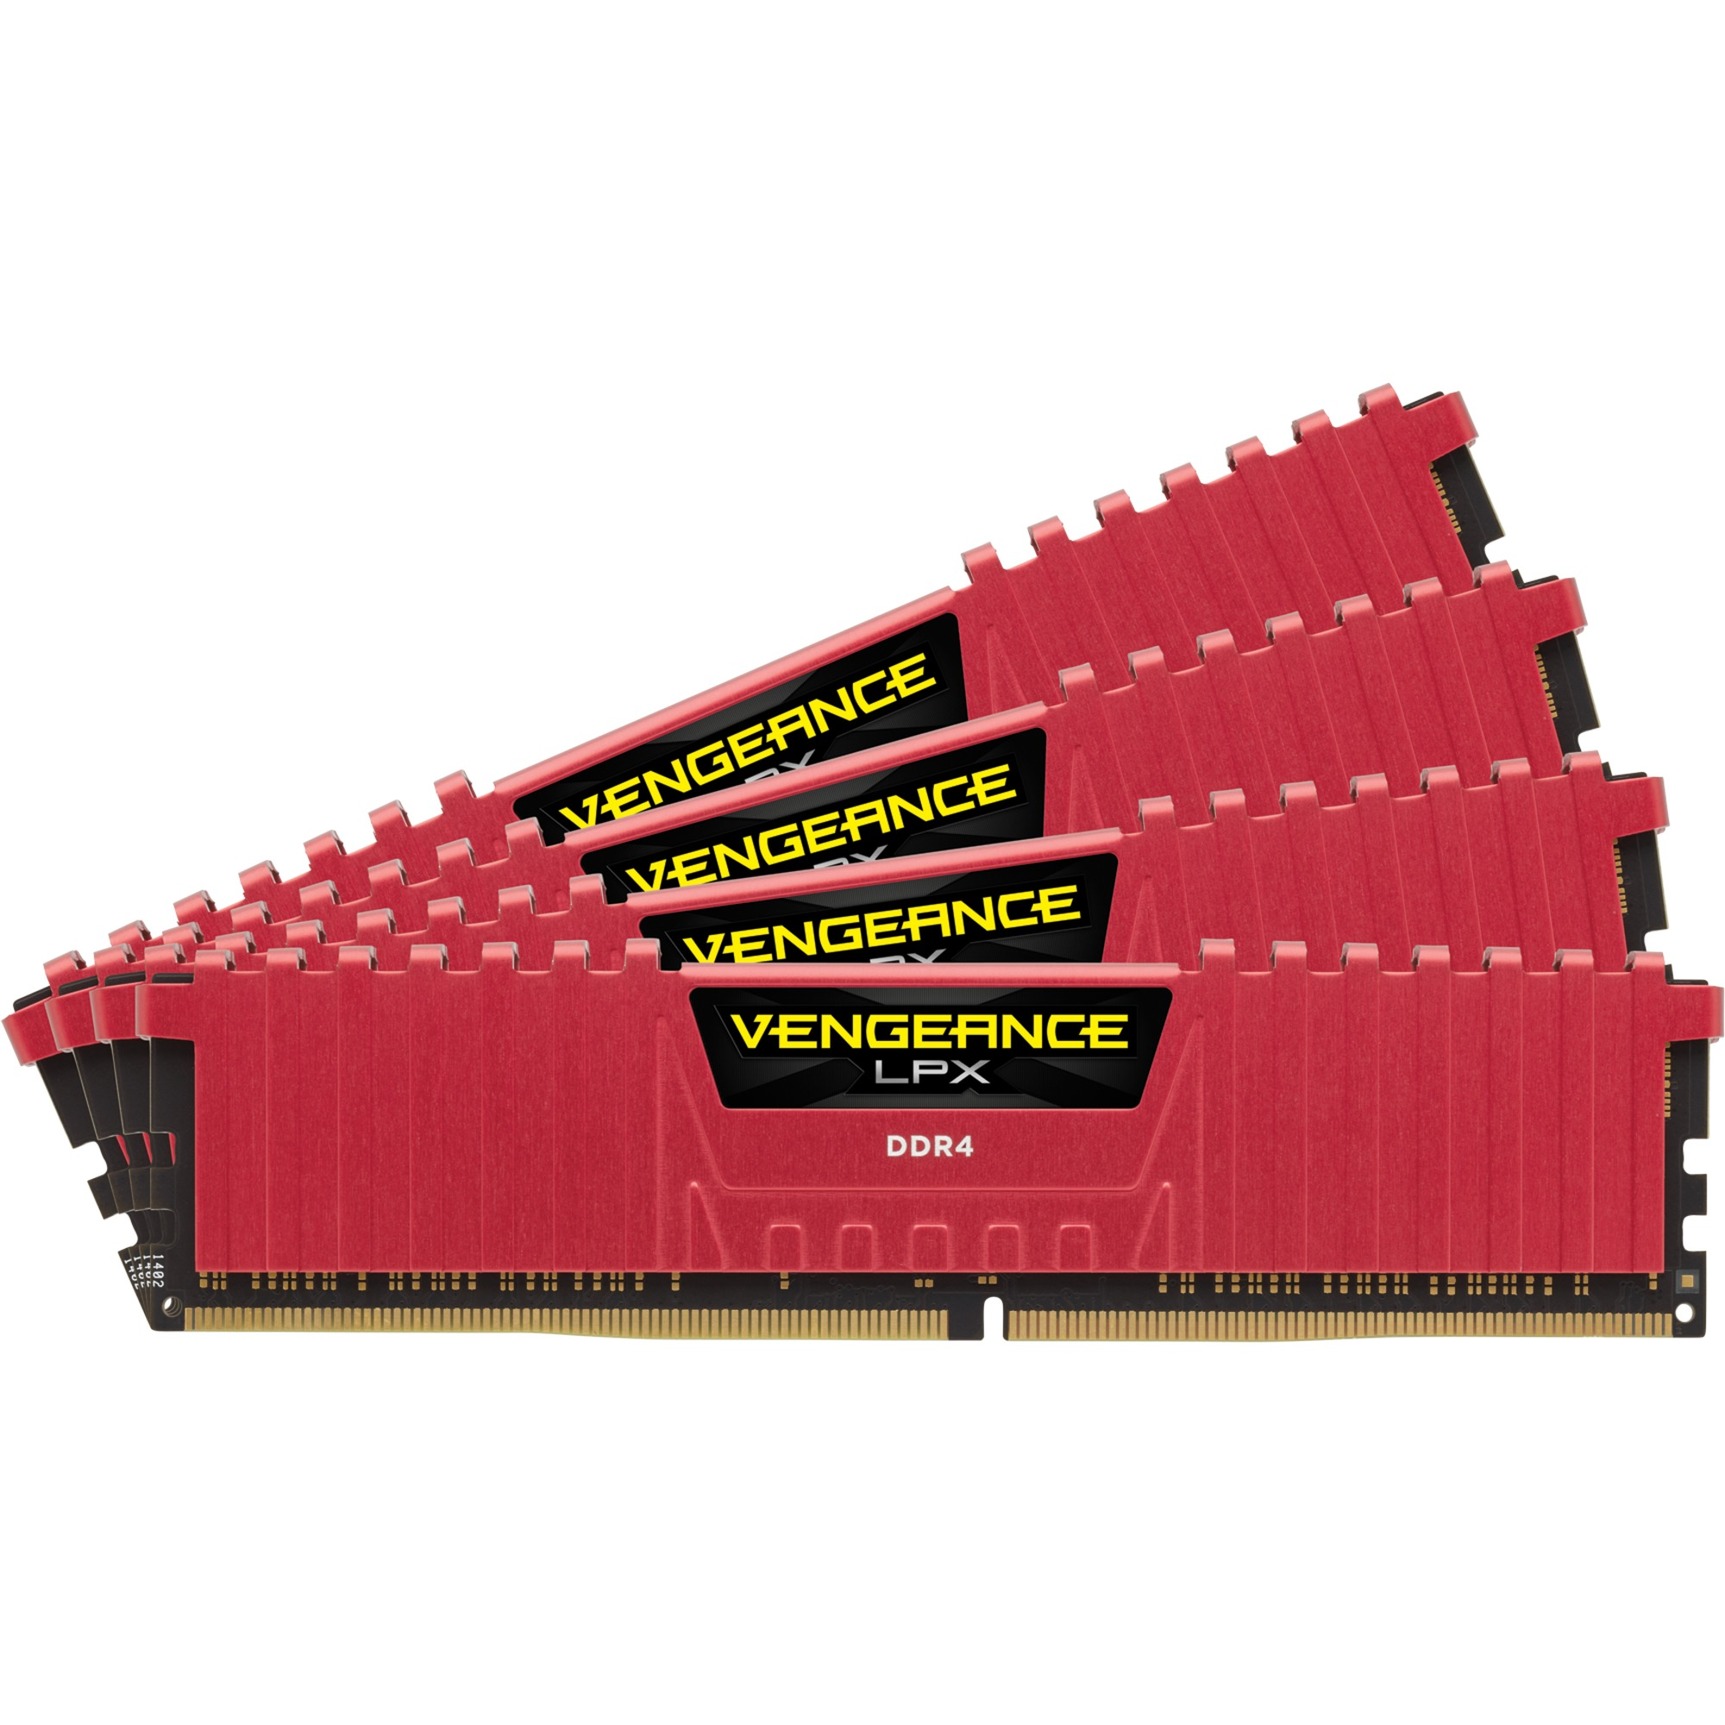 Vengeance LPX 32GB 3866MHz DDR4 moduł pamięci, Pamięc operacyjna